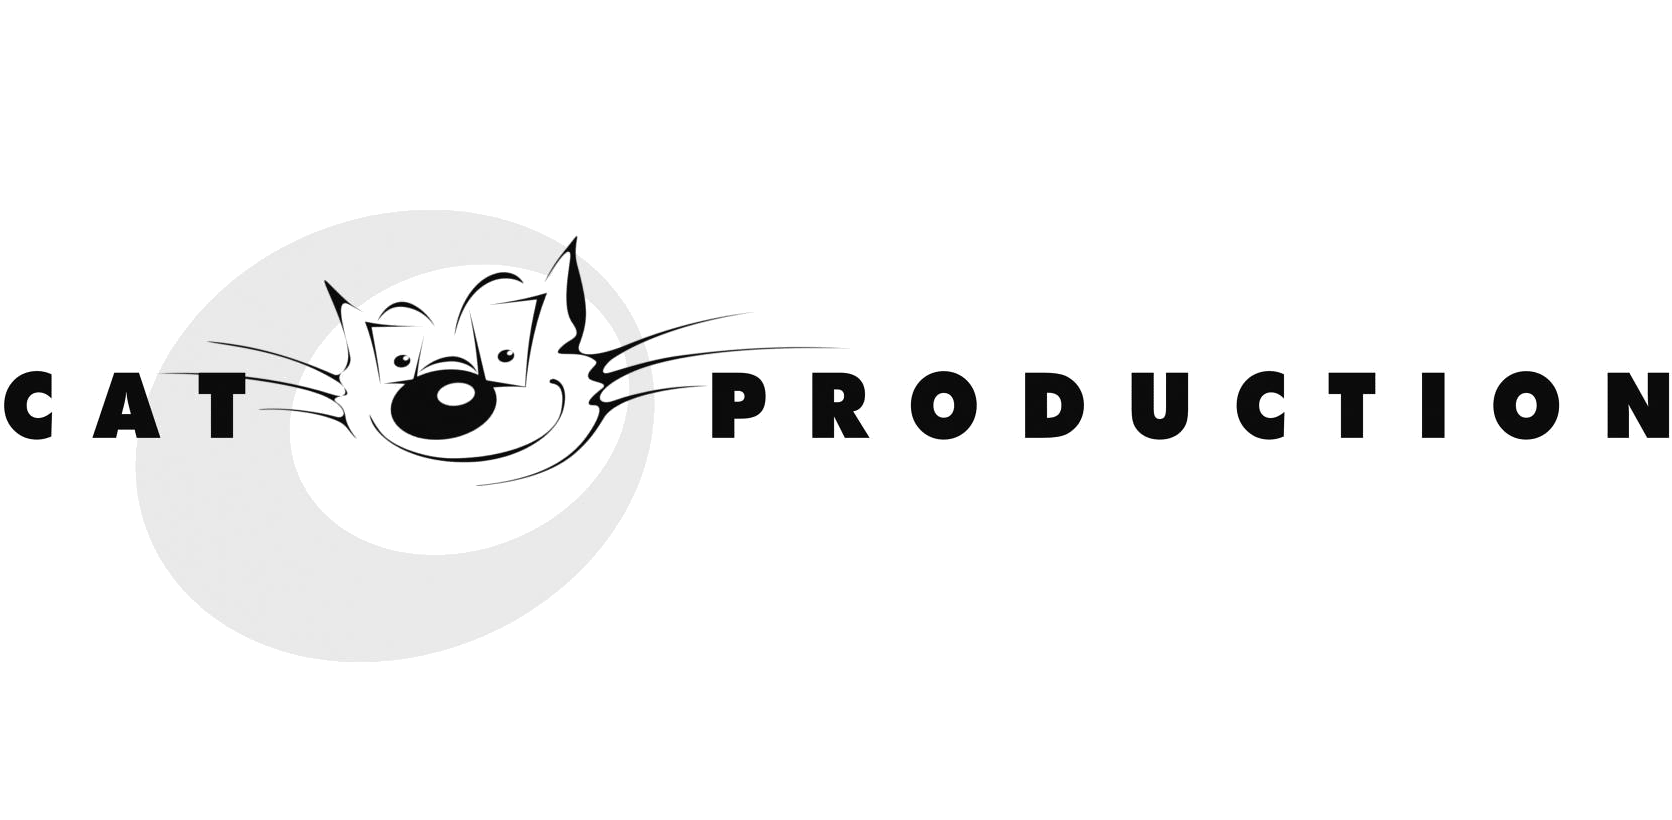 Cat Production